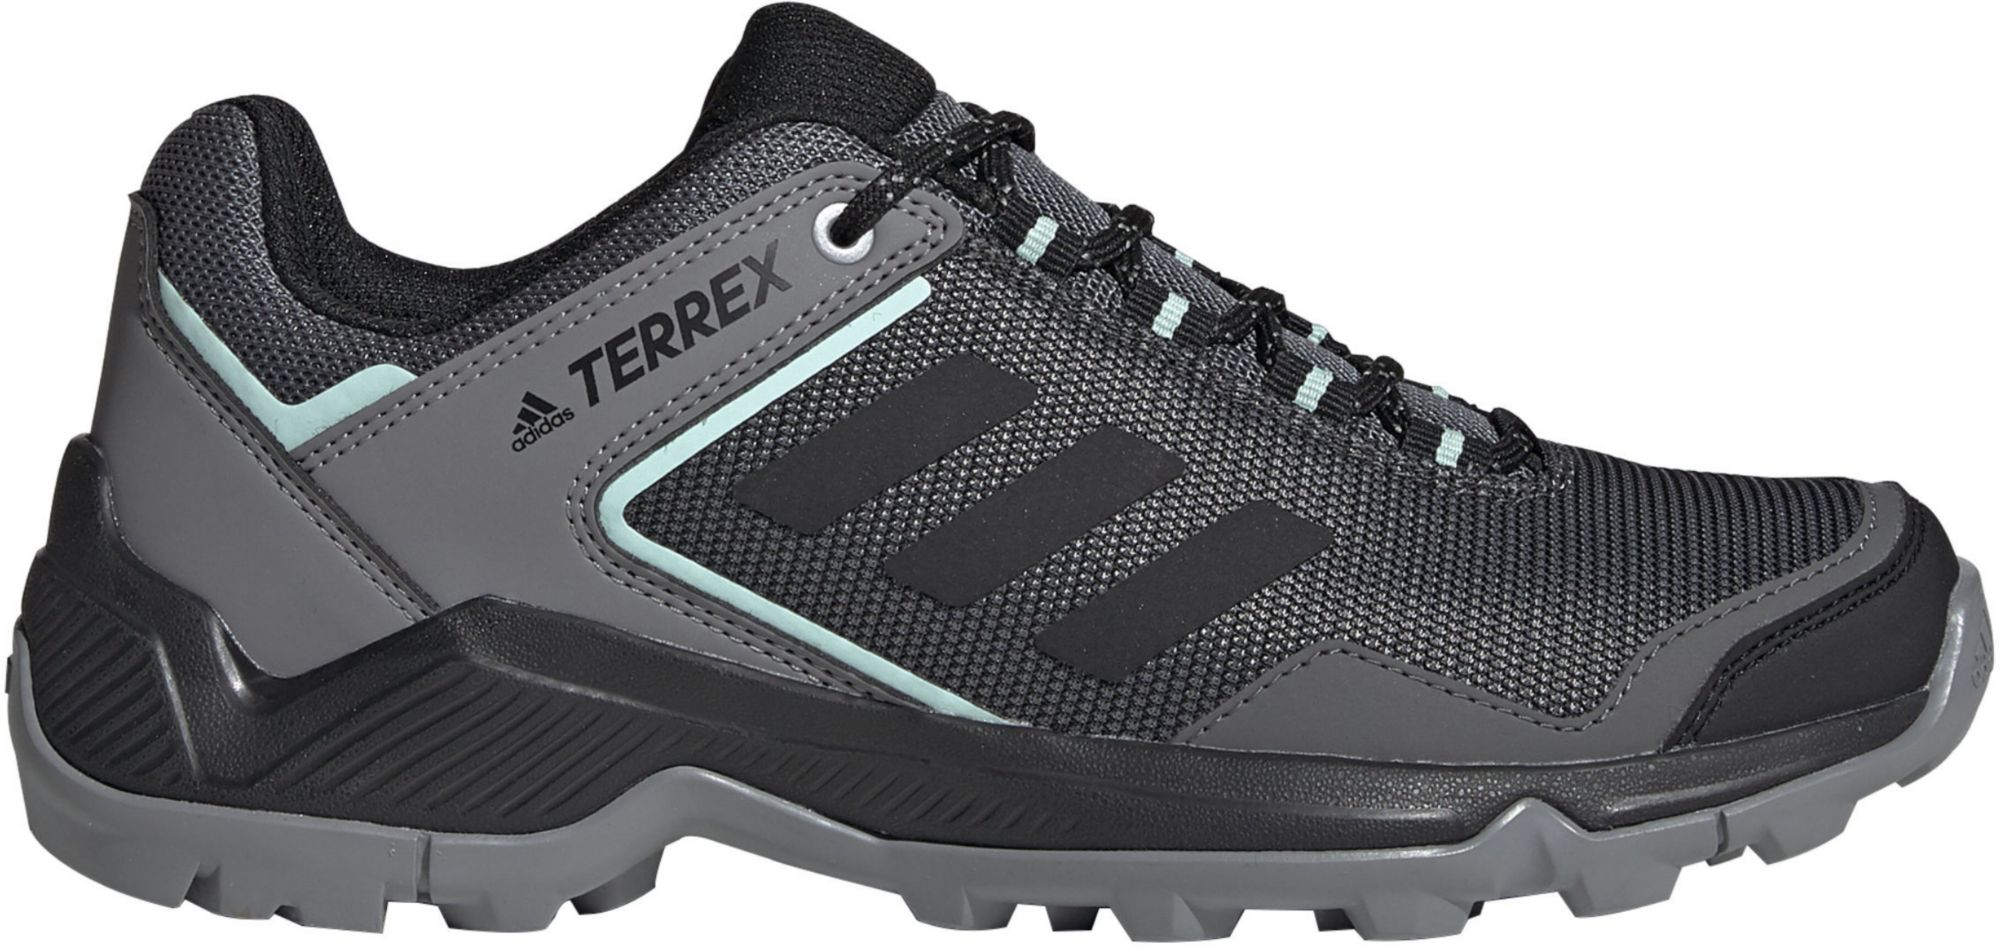 adidas hiking shoes women's terrex